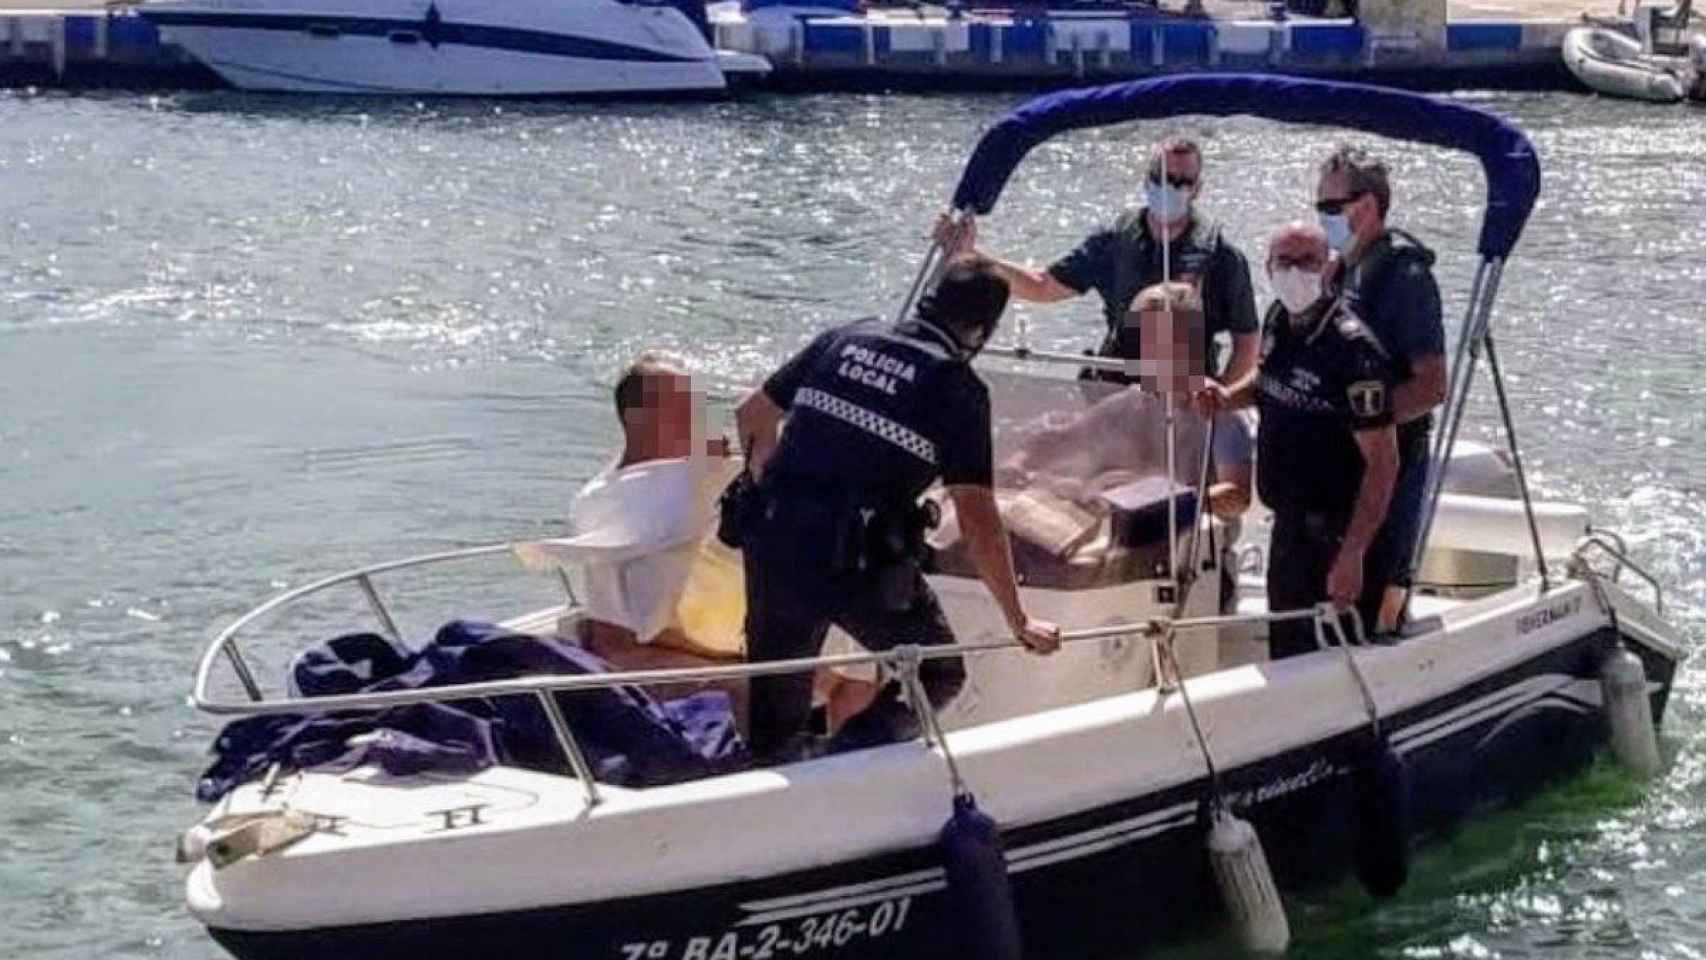 Agentes detienen a un hombre desnudo en alta mar / POLICÍA LOCAL ALBORAIA